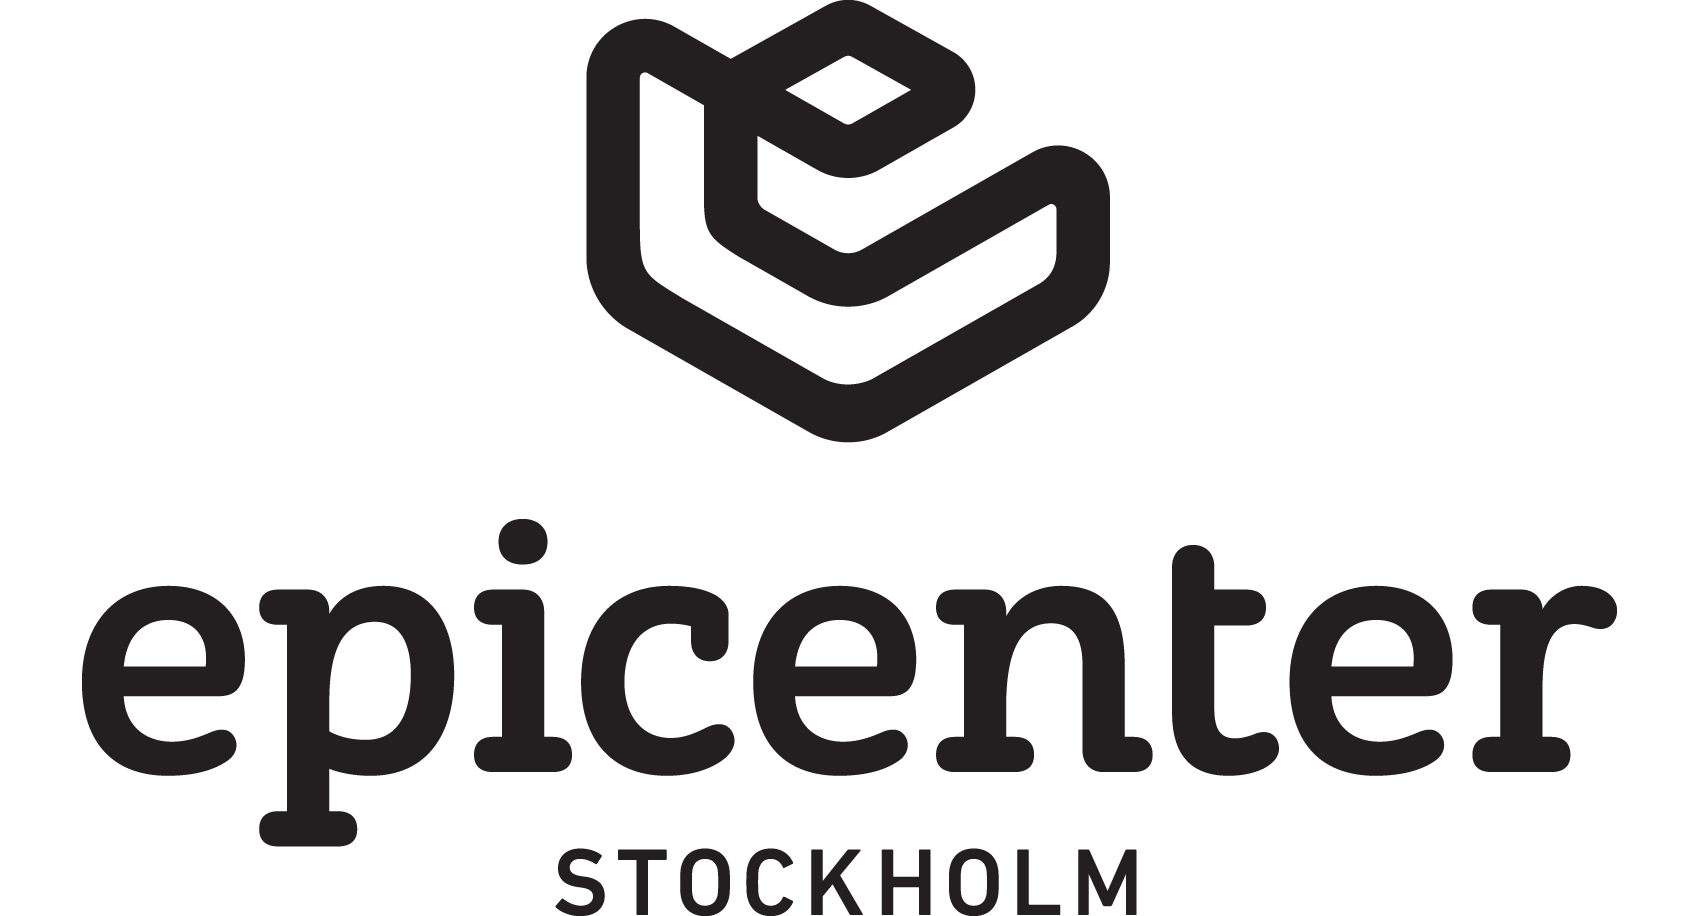 Epicenter_Logo_Stockholm.png